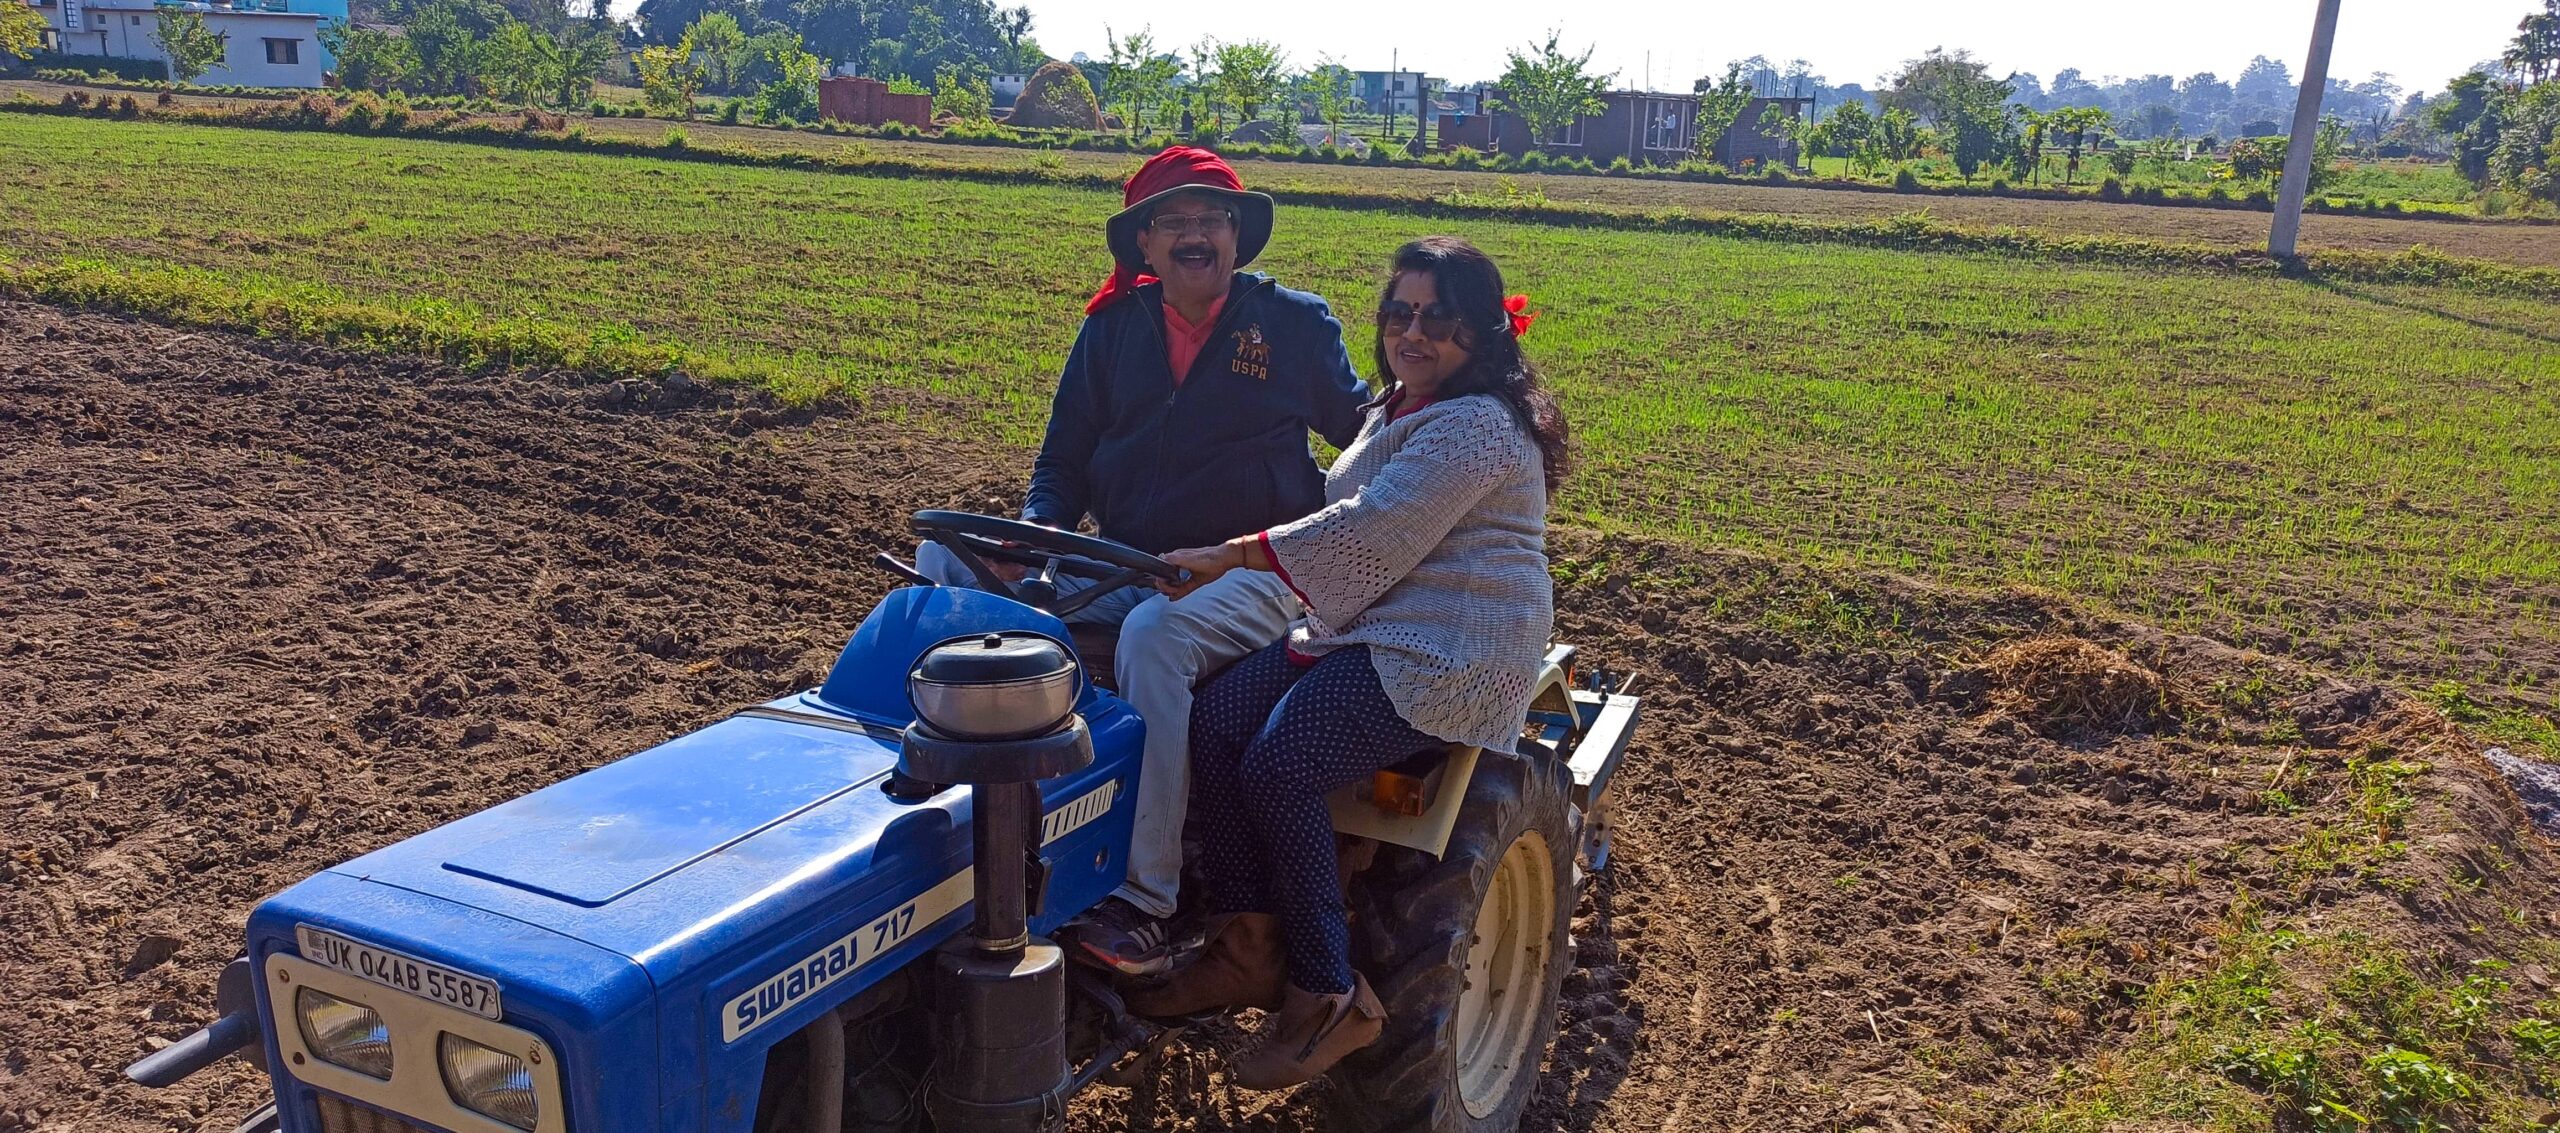 village-activities-tractor-ride